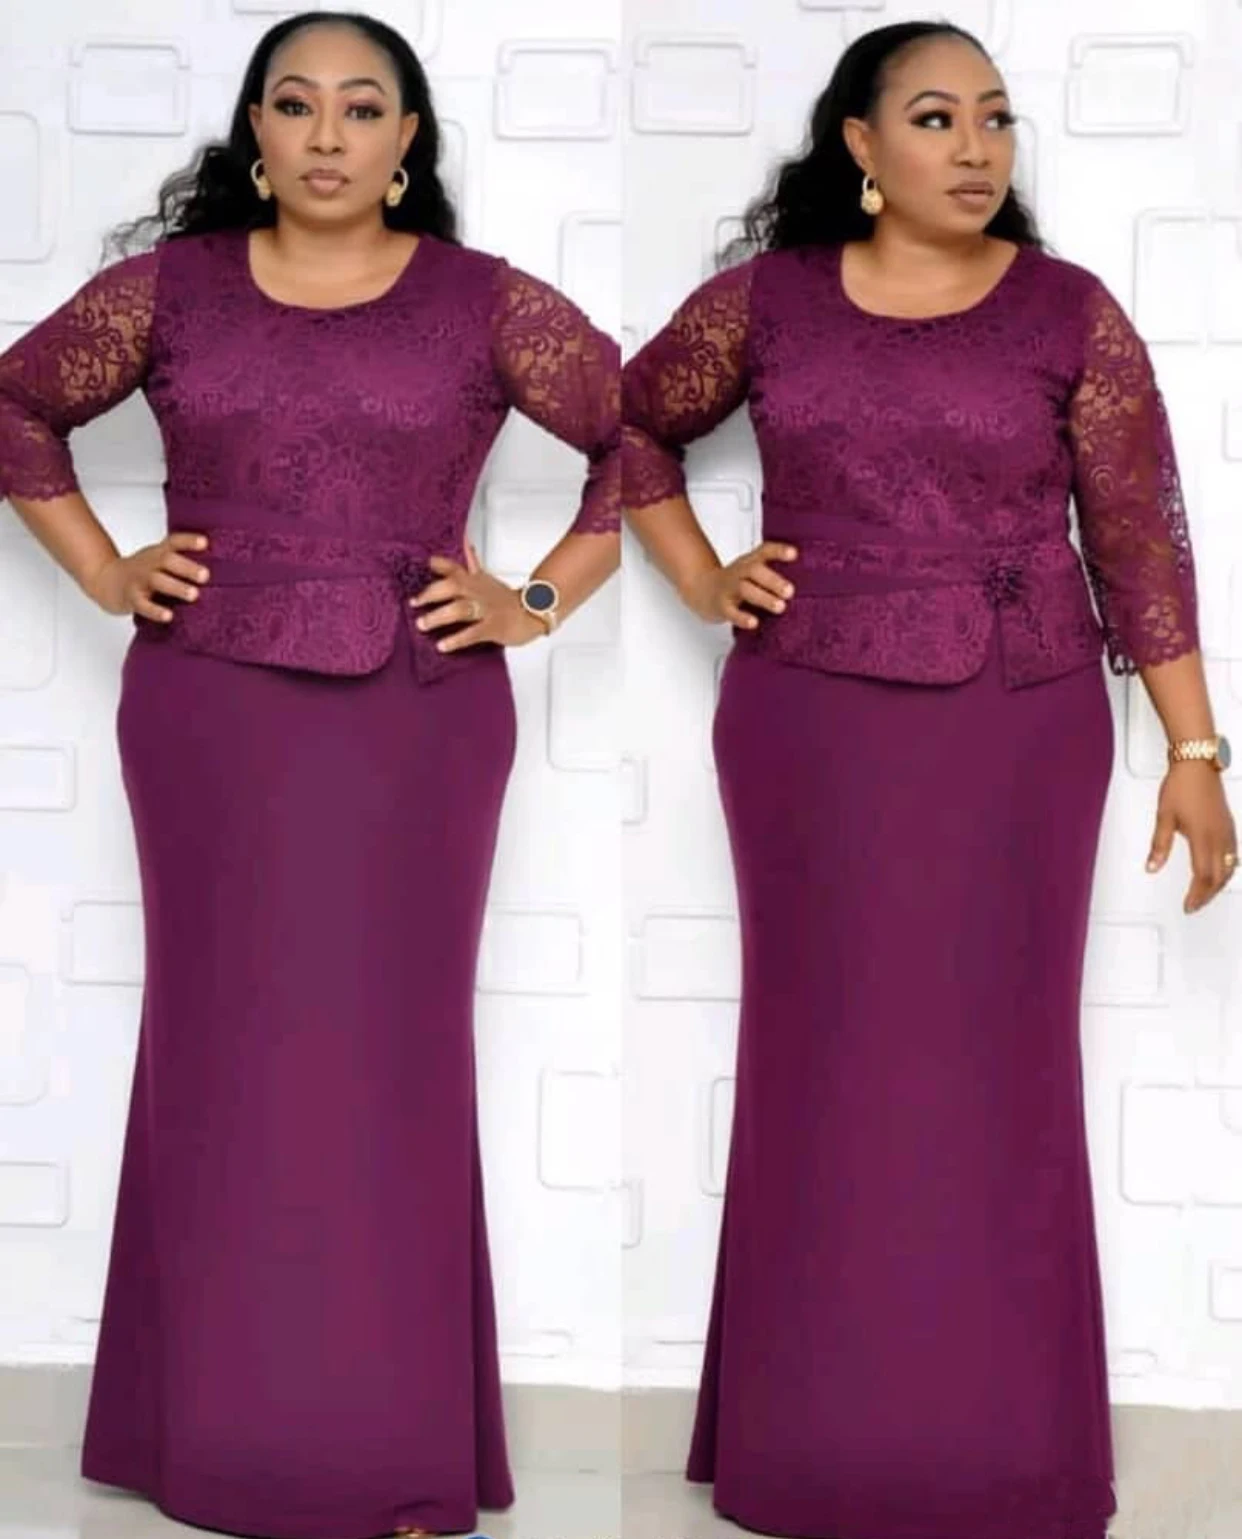 Direct sale african women's dress oversize simple pattern coat two-piece casual big fat suit plus size dresses KC-AM395